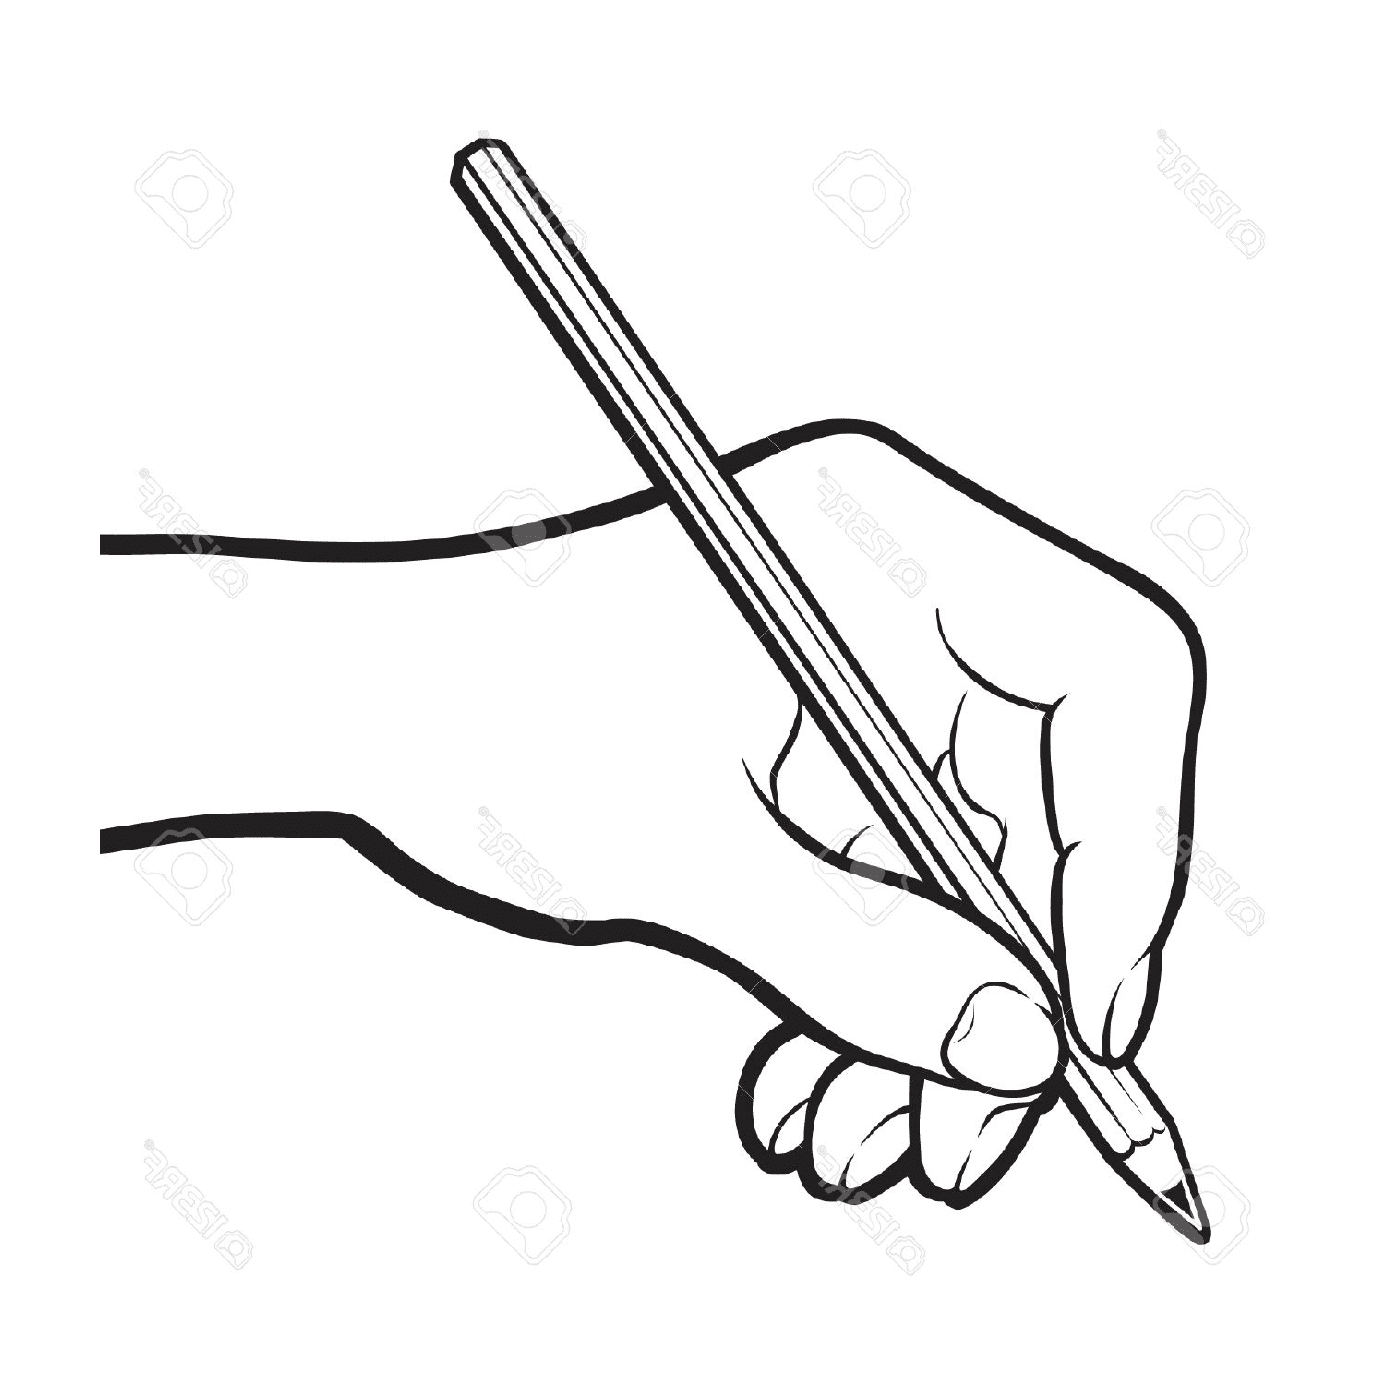  disegno a matita a mano 